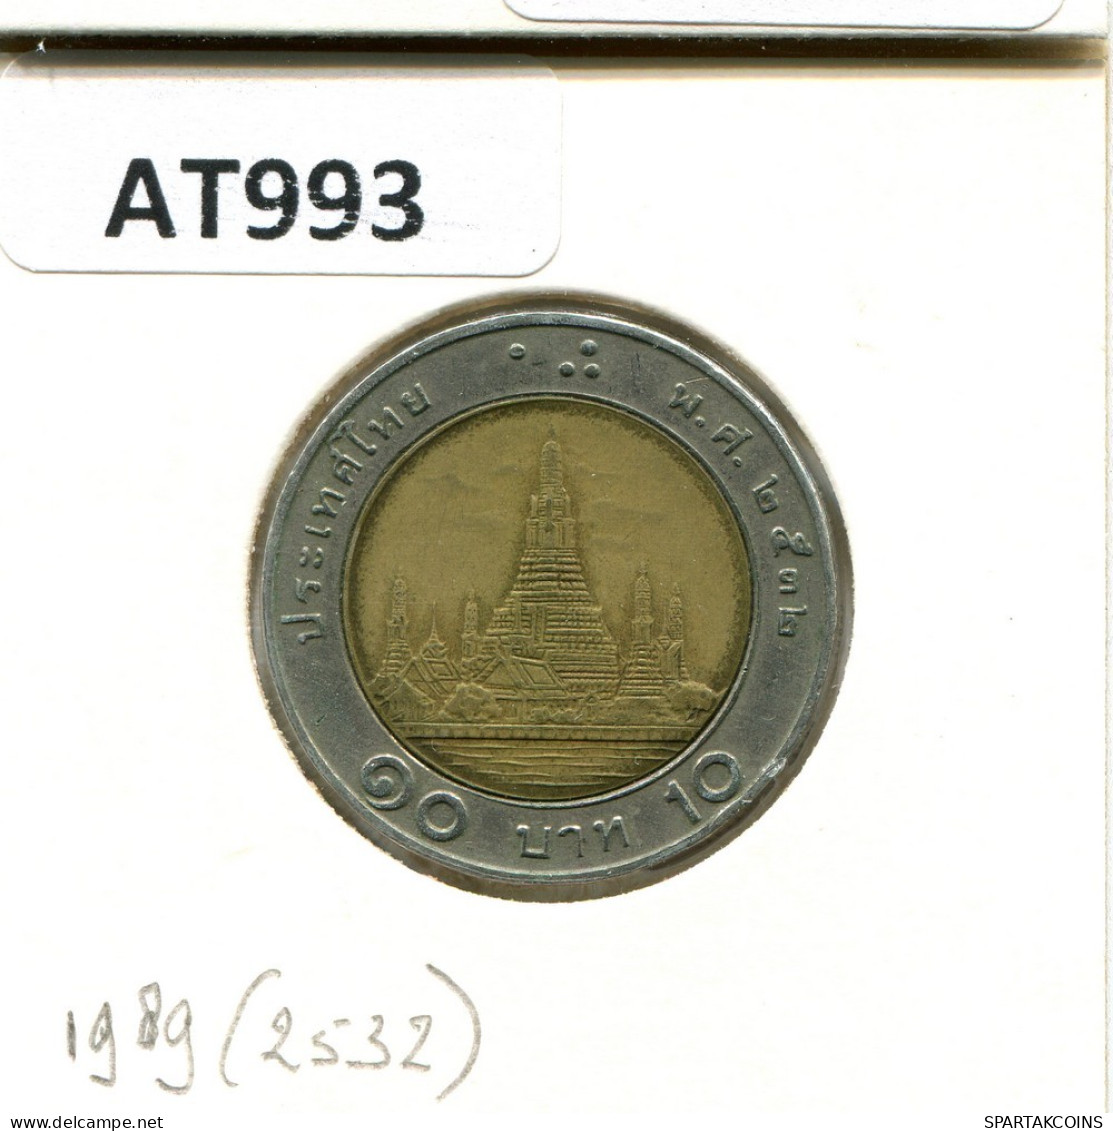 10 BAHT 1992 THAILAND BIMETALLIC Coin #AT993.U.A - Thailand